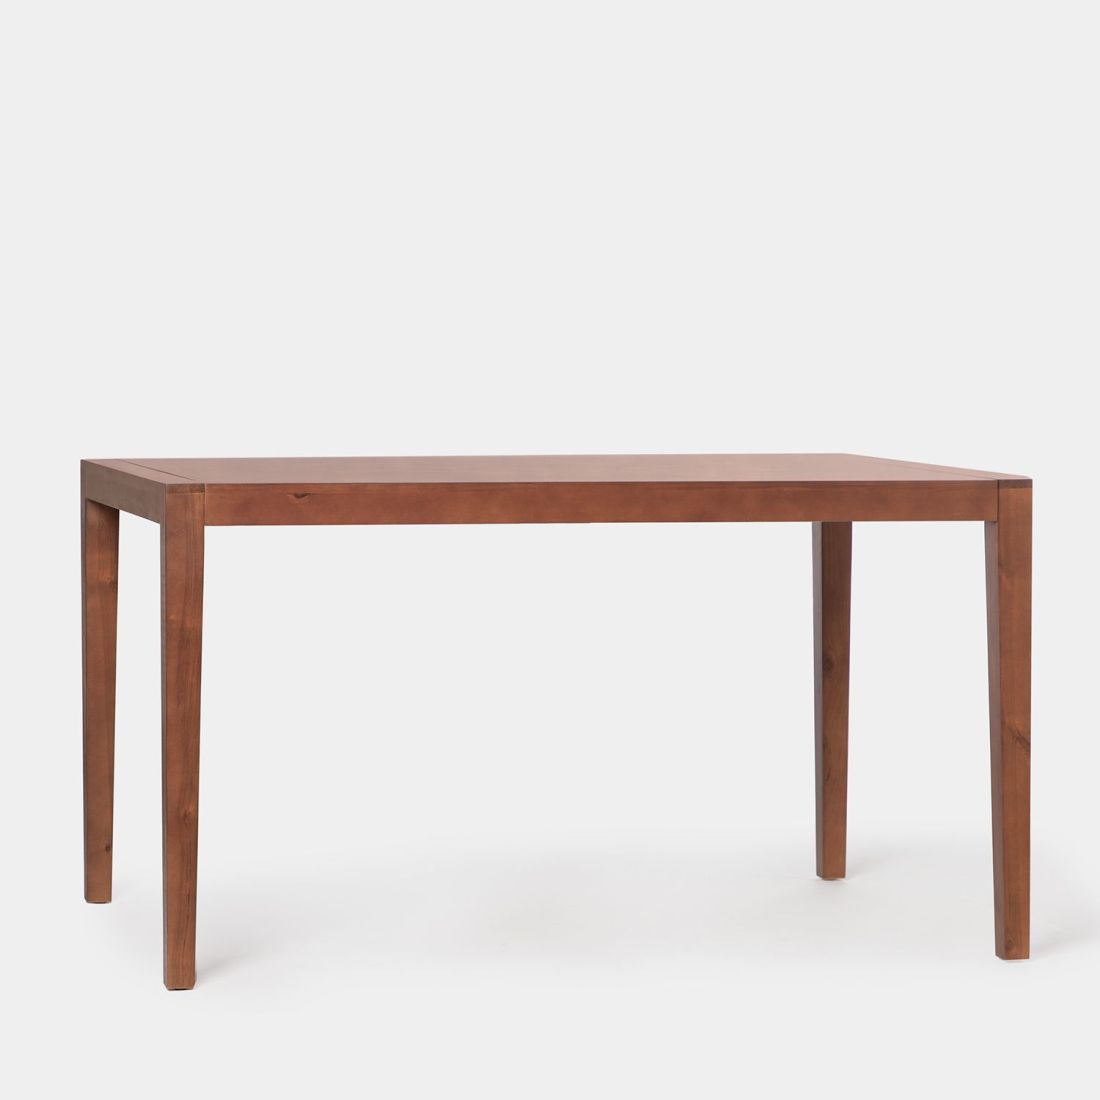 La mesa de comedor rectangular Mara en chapa natural y madera maciza color castaño tiene un diseño sencillo y atemporal idóneo para completar cualquier salón